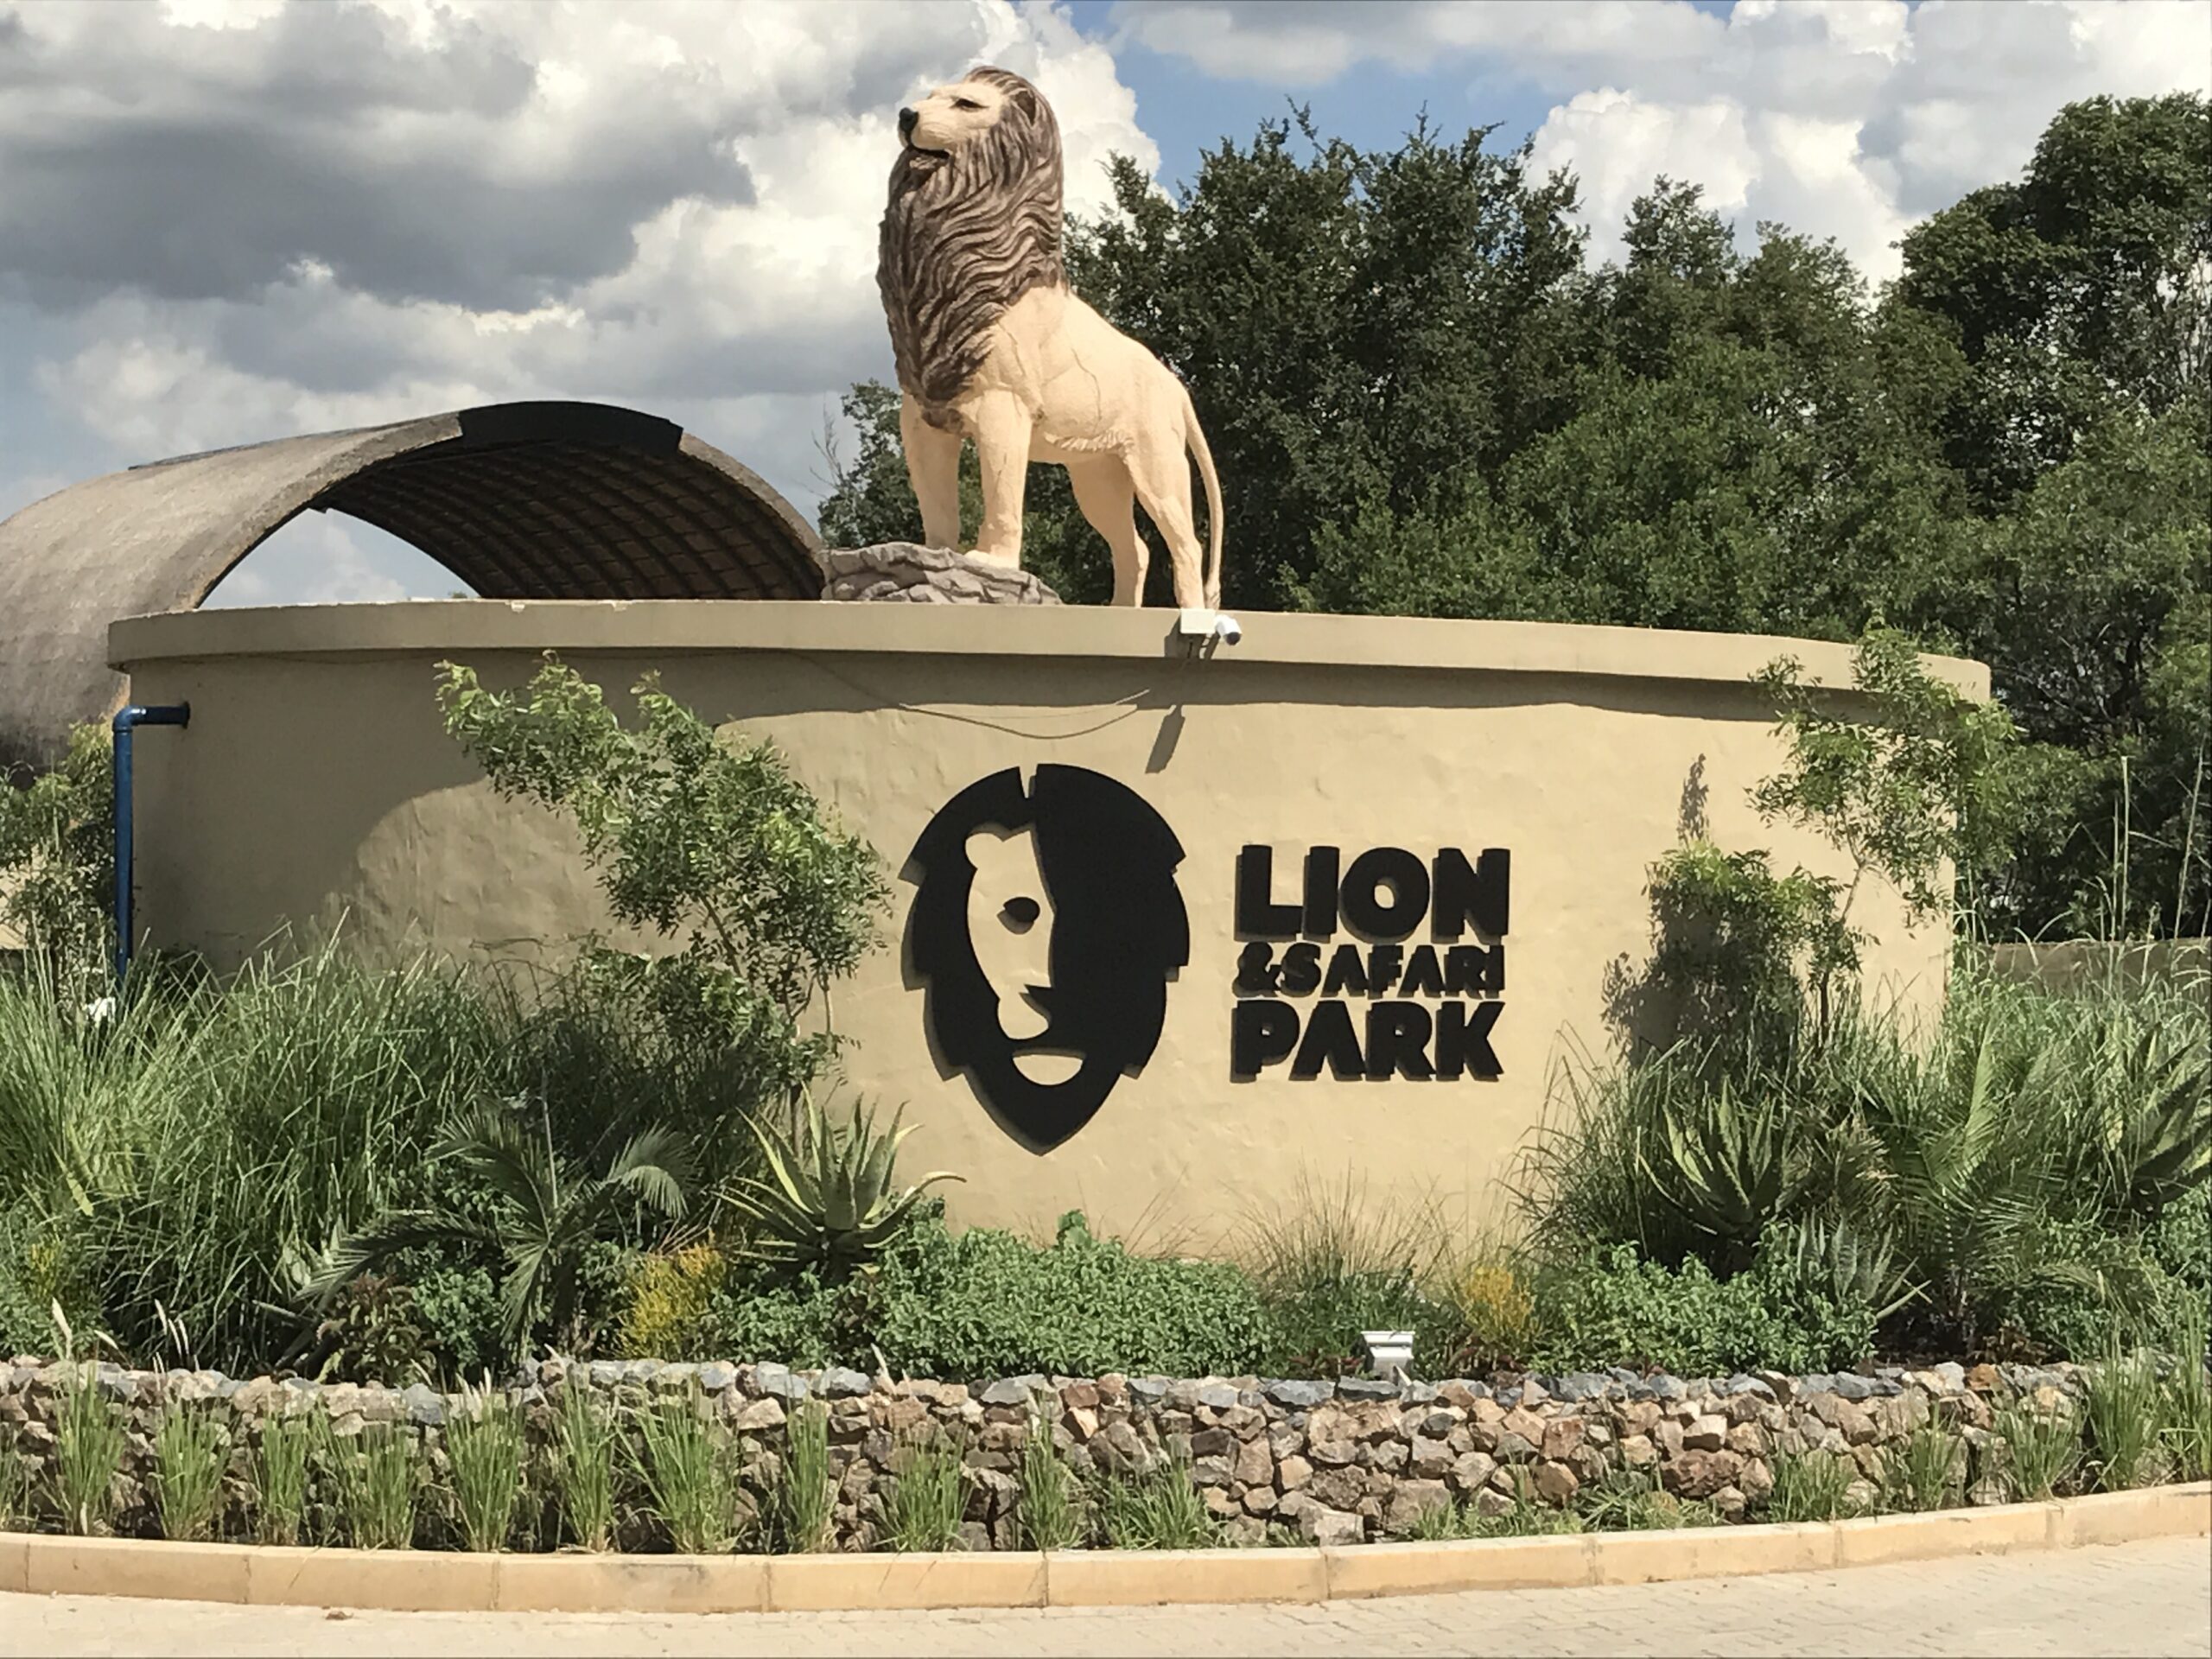 Lion park Johannesburg